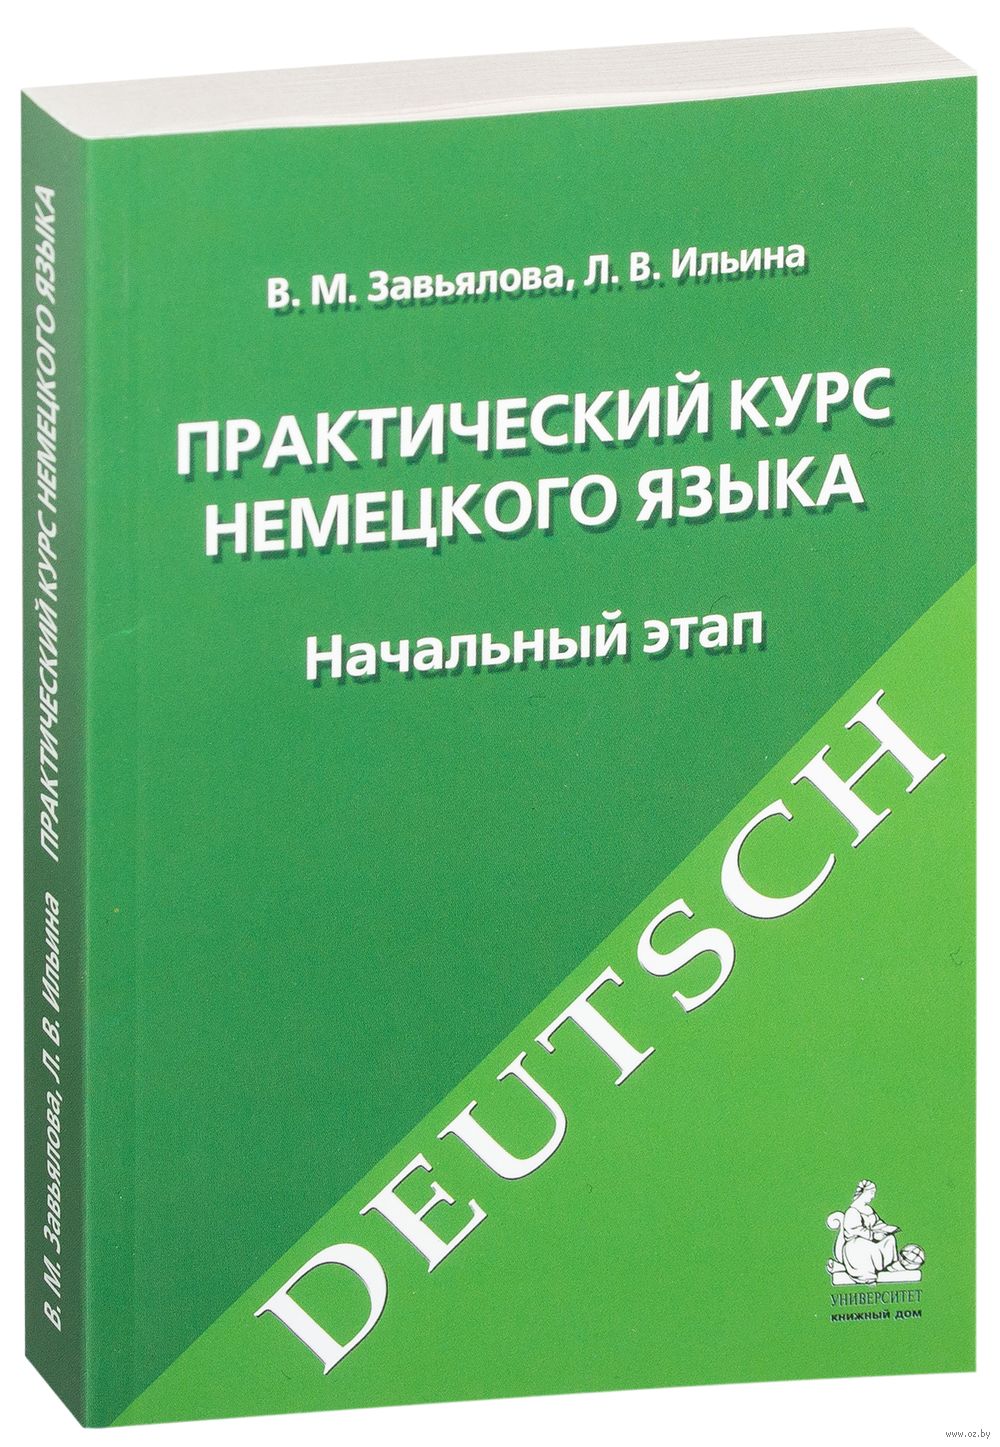 Решебник на книгу практический курс немецкого языка завьялова и ильина 10-е издание